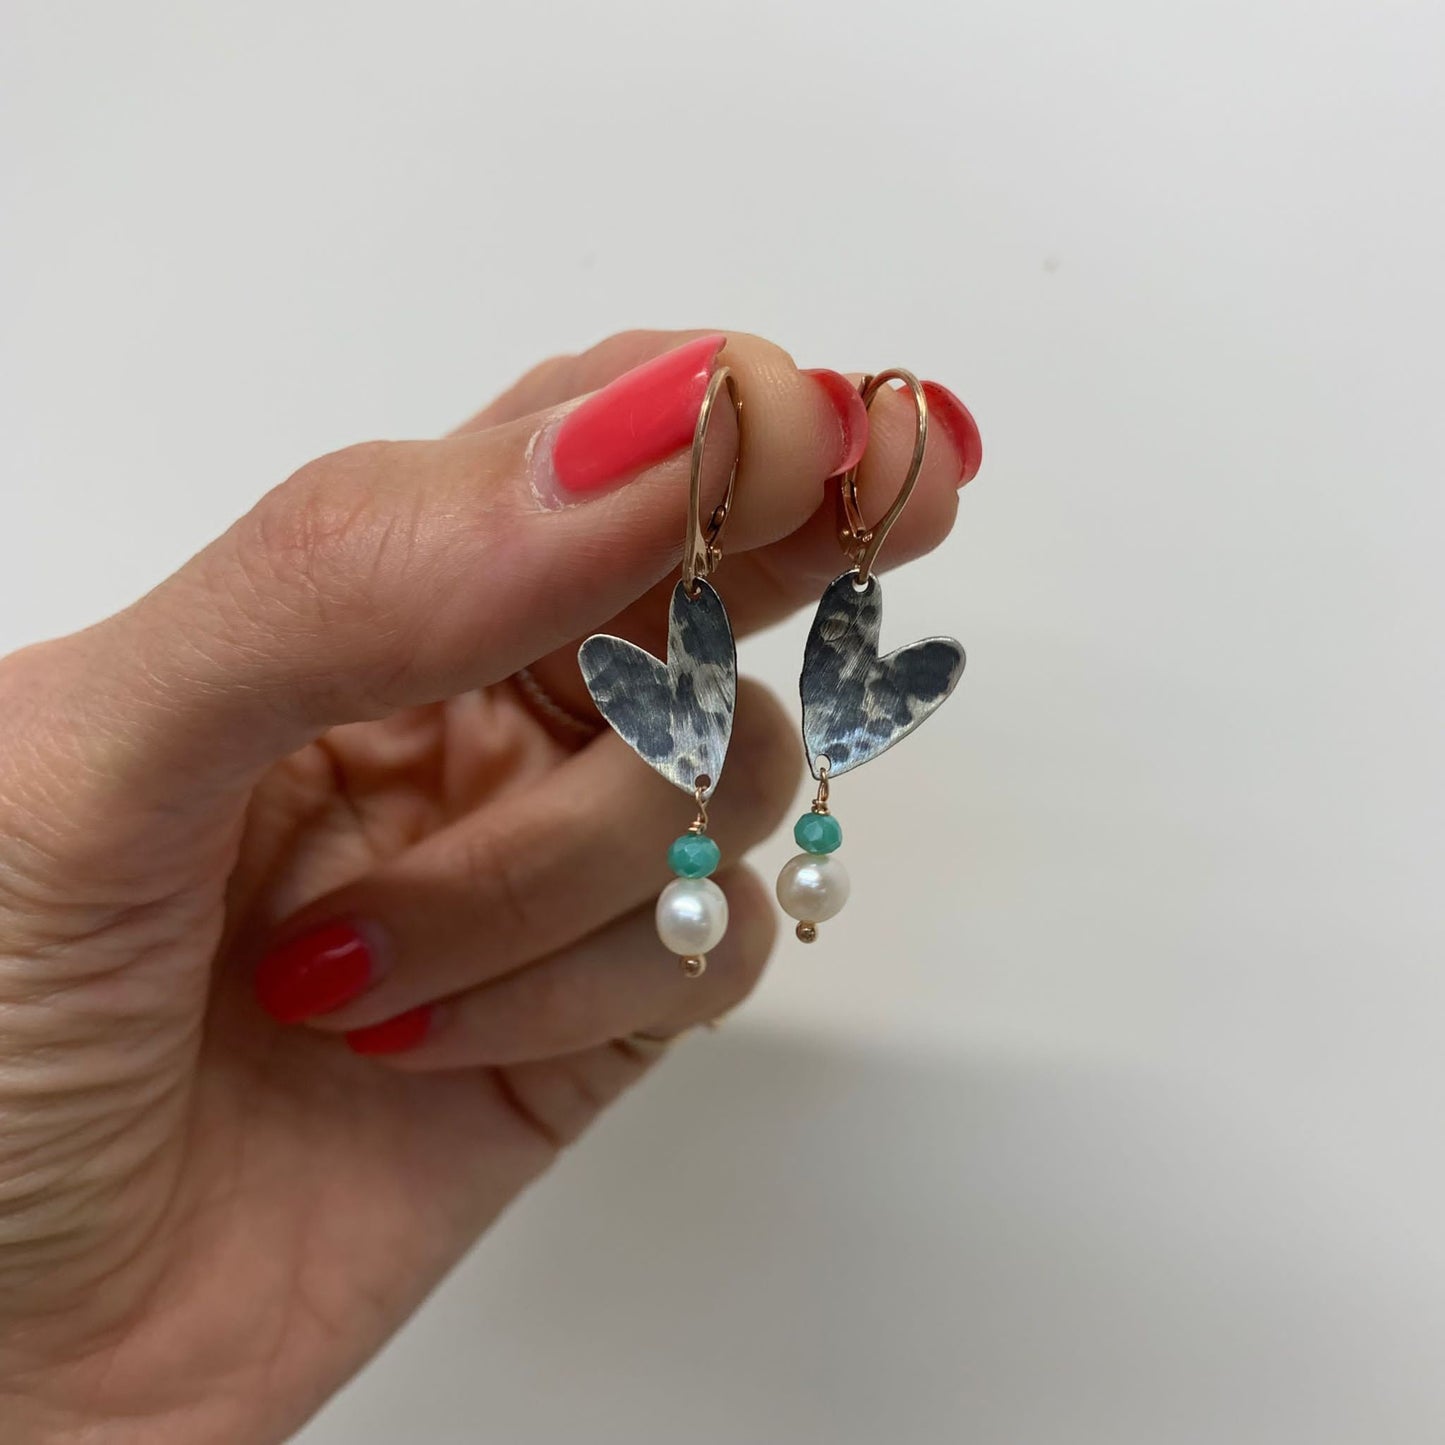 Coppia orecchini a monachella cuore allungato rutenio con cristallo acqua marina e perla pendente